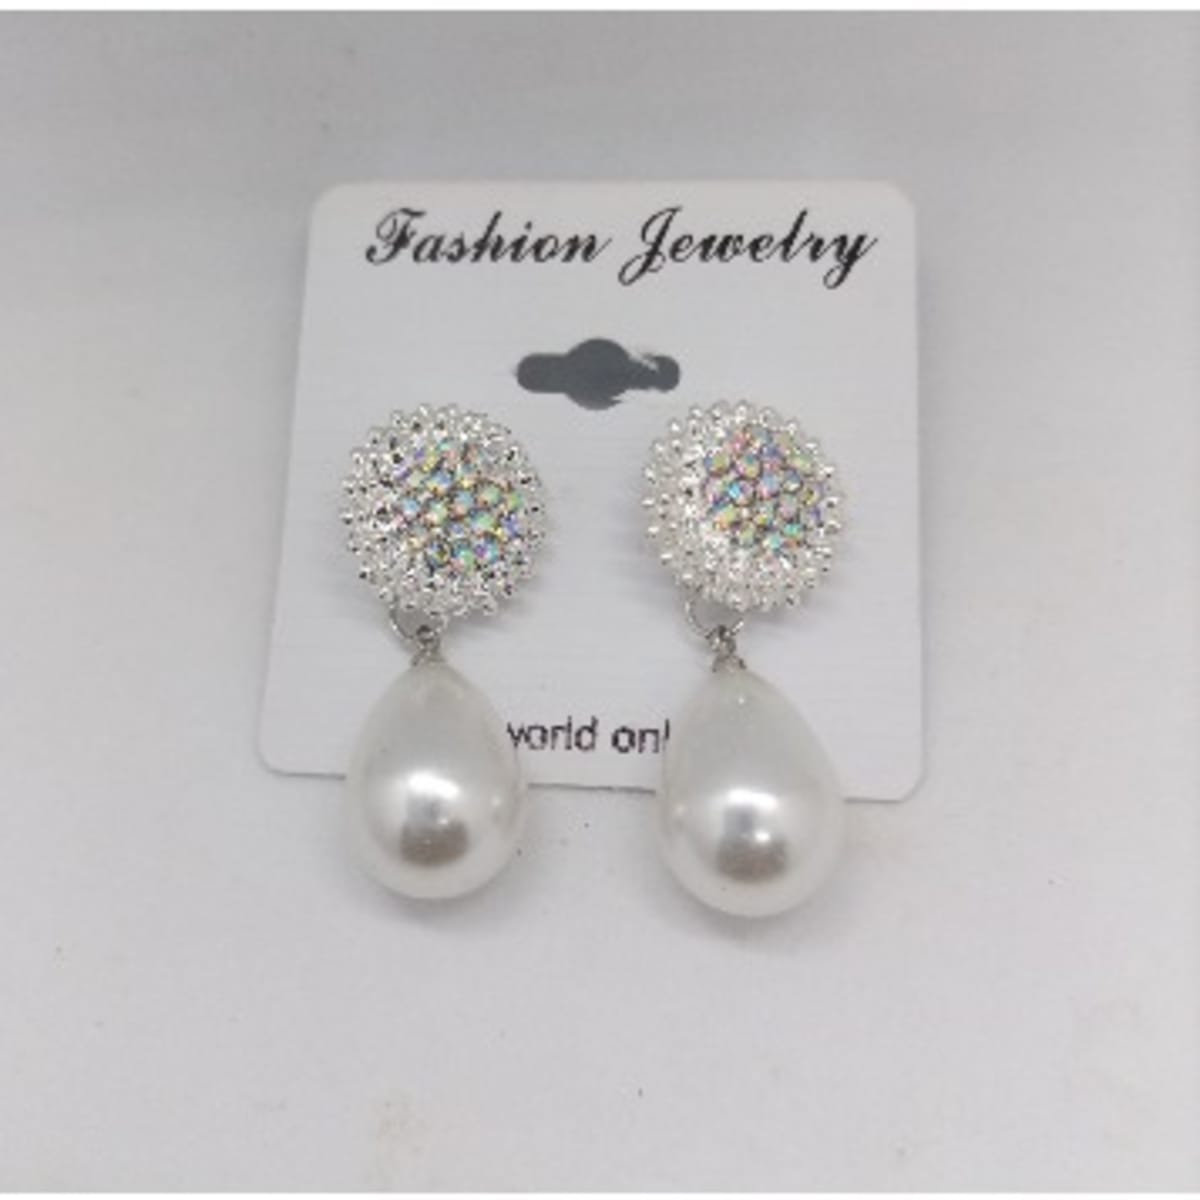 Rhinestone ball dangle earrings - Women's fashion